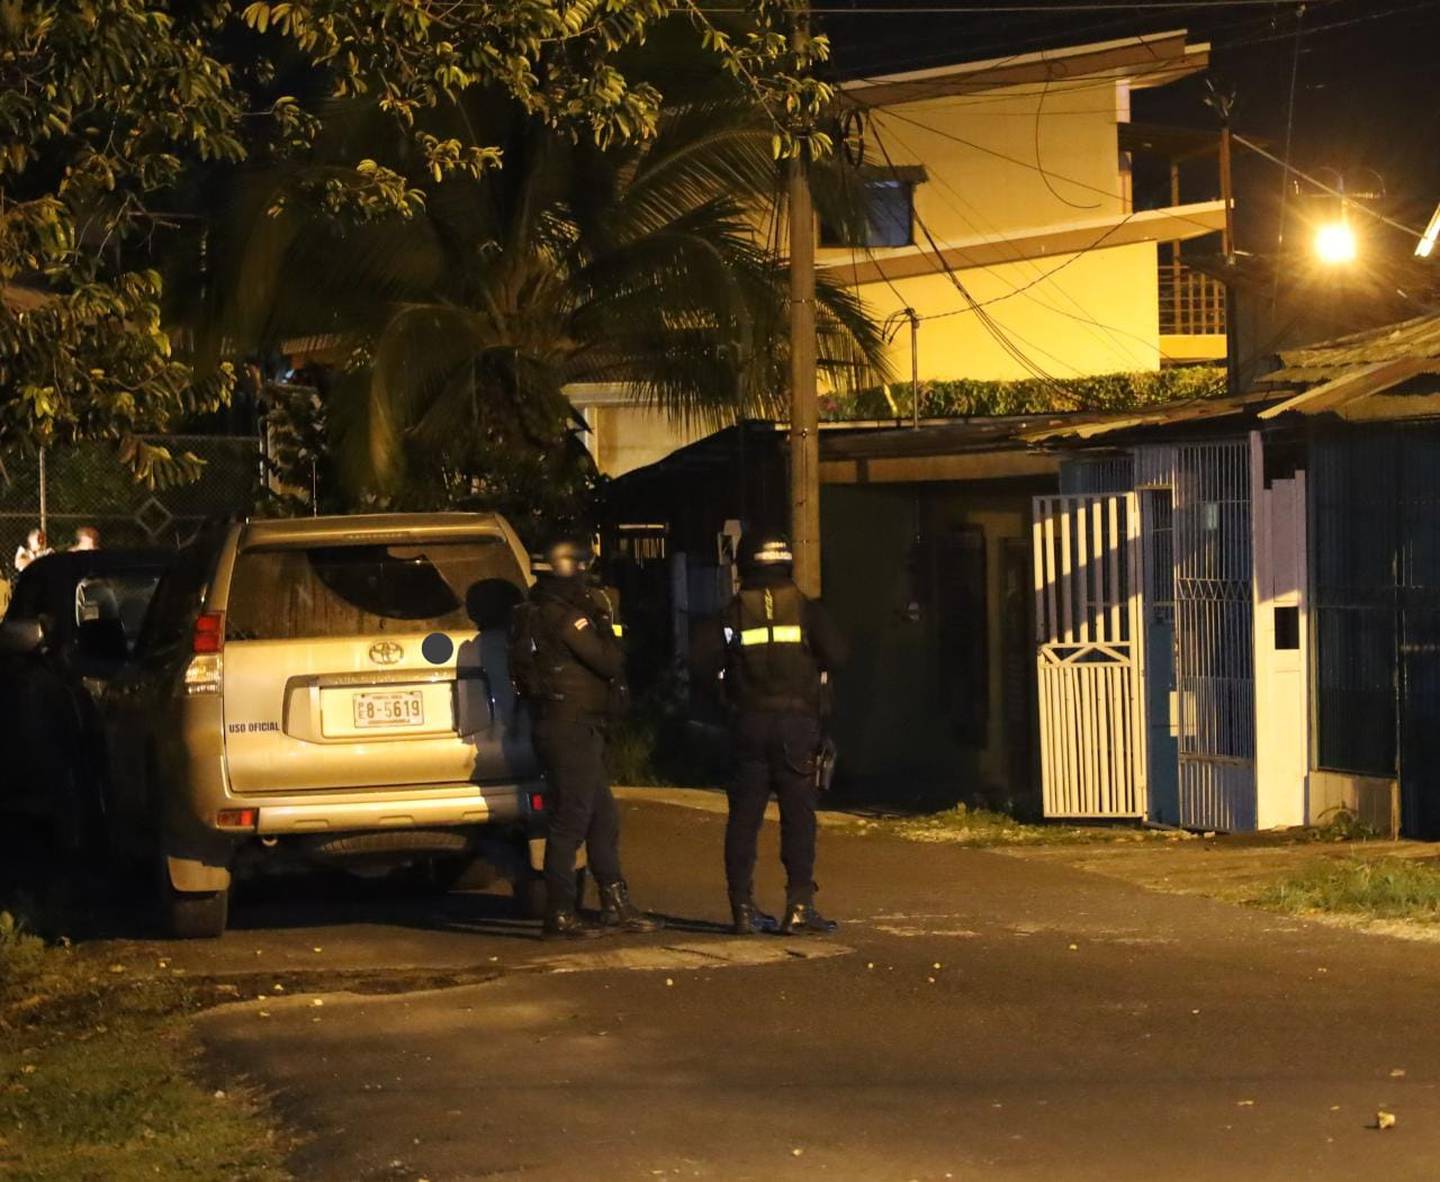 Agentes localizaron el cuerpo de la víctima en una casa en el barrio Los Maderos en Guápiles, Limón, en estado de descomposición.
Foto: Reiner Montero, corresponsal GN.